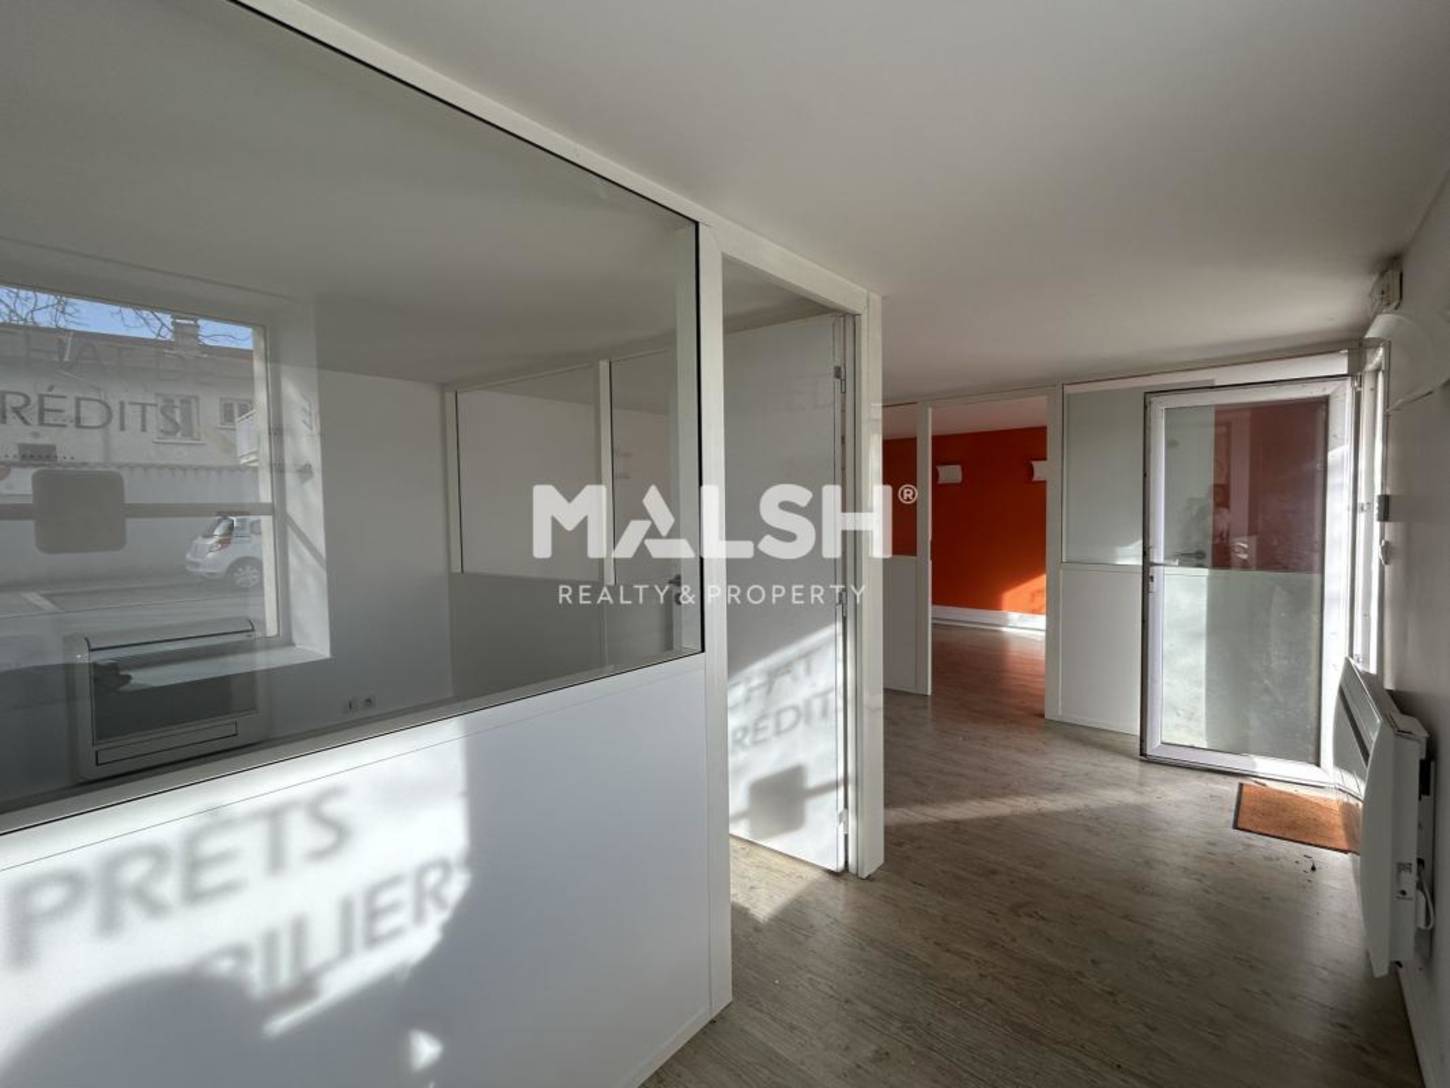 MALSH Realty & Property - Commerce - Lyon Sud Ouest - Brignais - 2